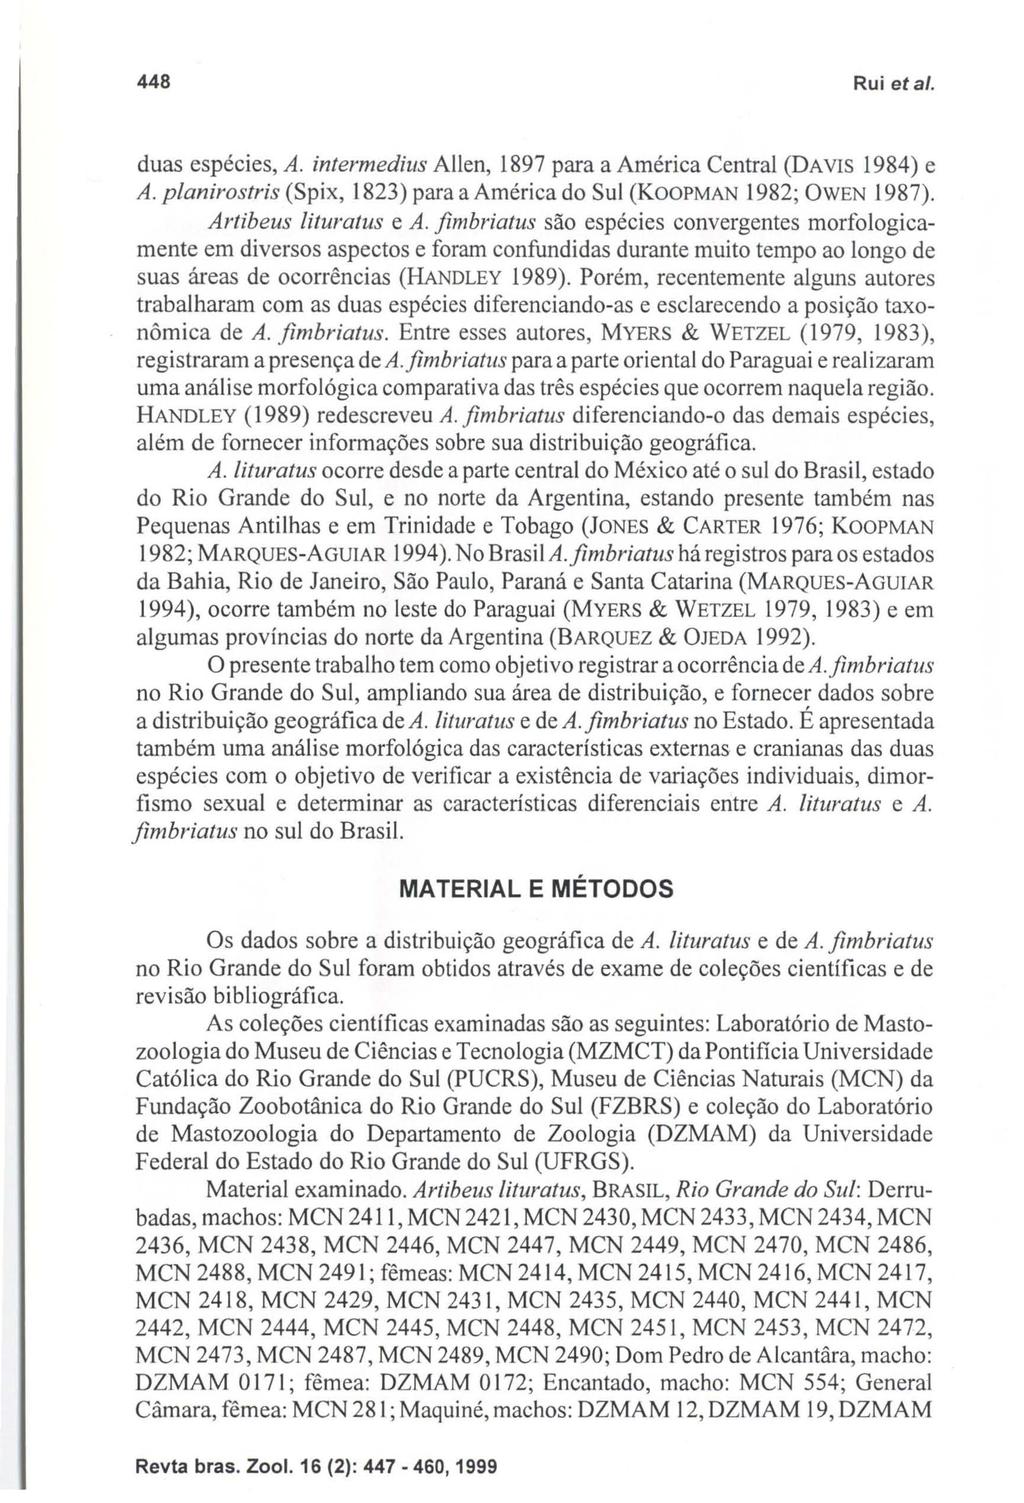 448 Rui eta/o duas espécies, A. intermedius Allen, 1897 para a América Central (DAVIS 1984) e A. planirostris (Spix, 1823) para a América do Sul (KOOPMAN 1982; OWEN 1987). Artibeus lituratus e A.